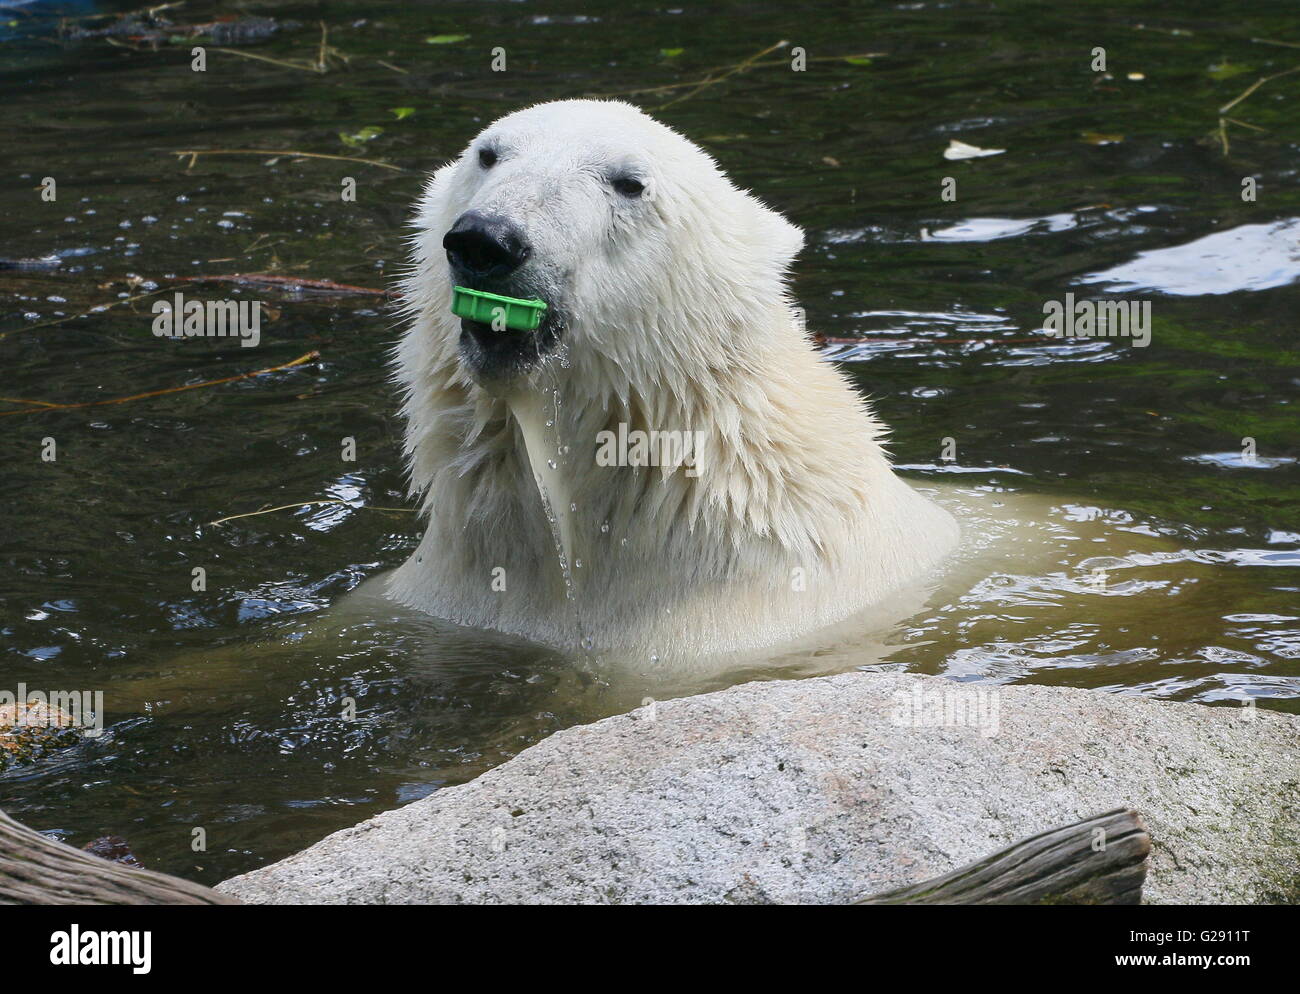 La pulizia dell'ambiente - affiorante femmina orso polare (Ursus maritimus) closeup della testa, tappo in plastica per bottiglie nella sua bocca, Foto Stock